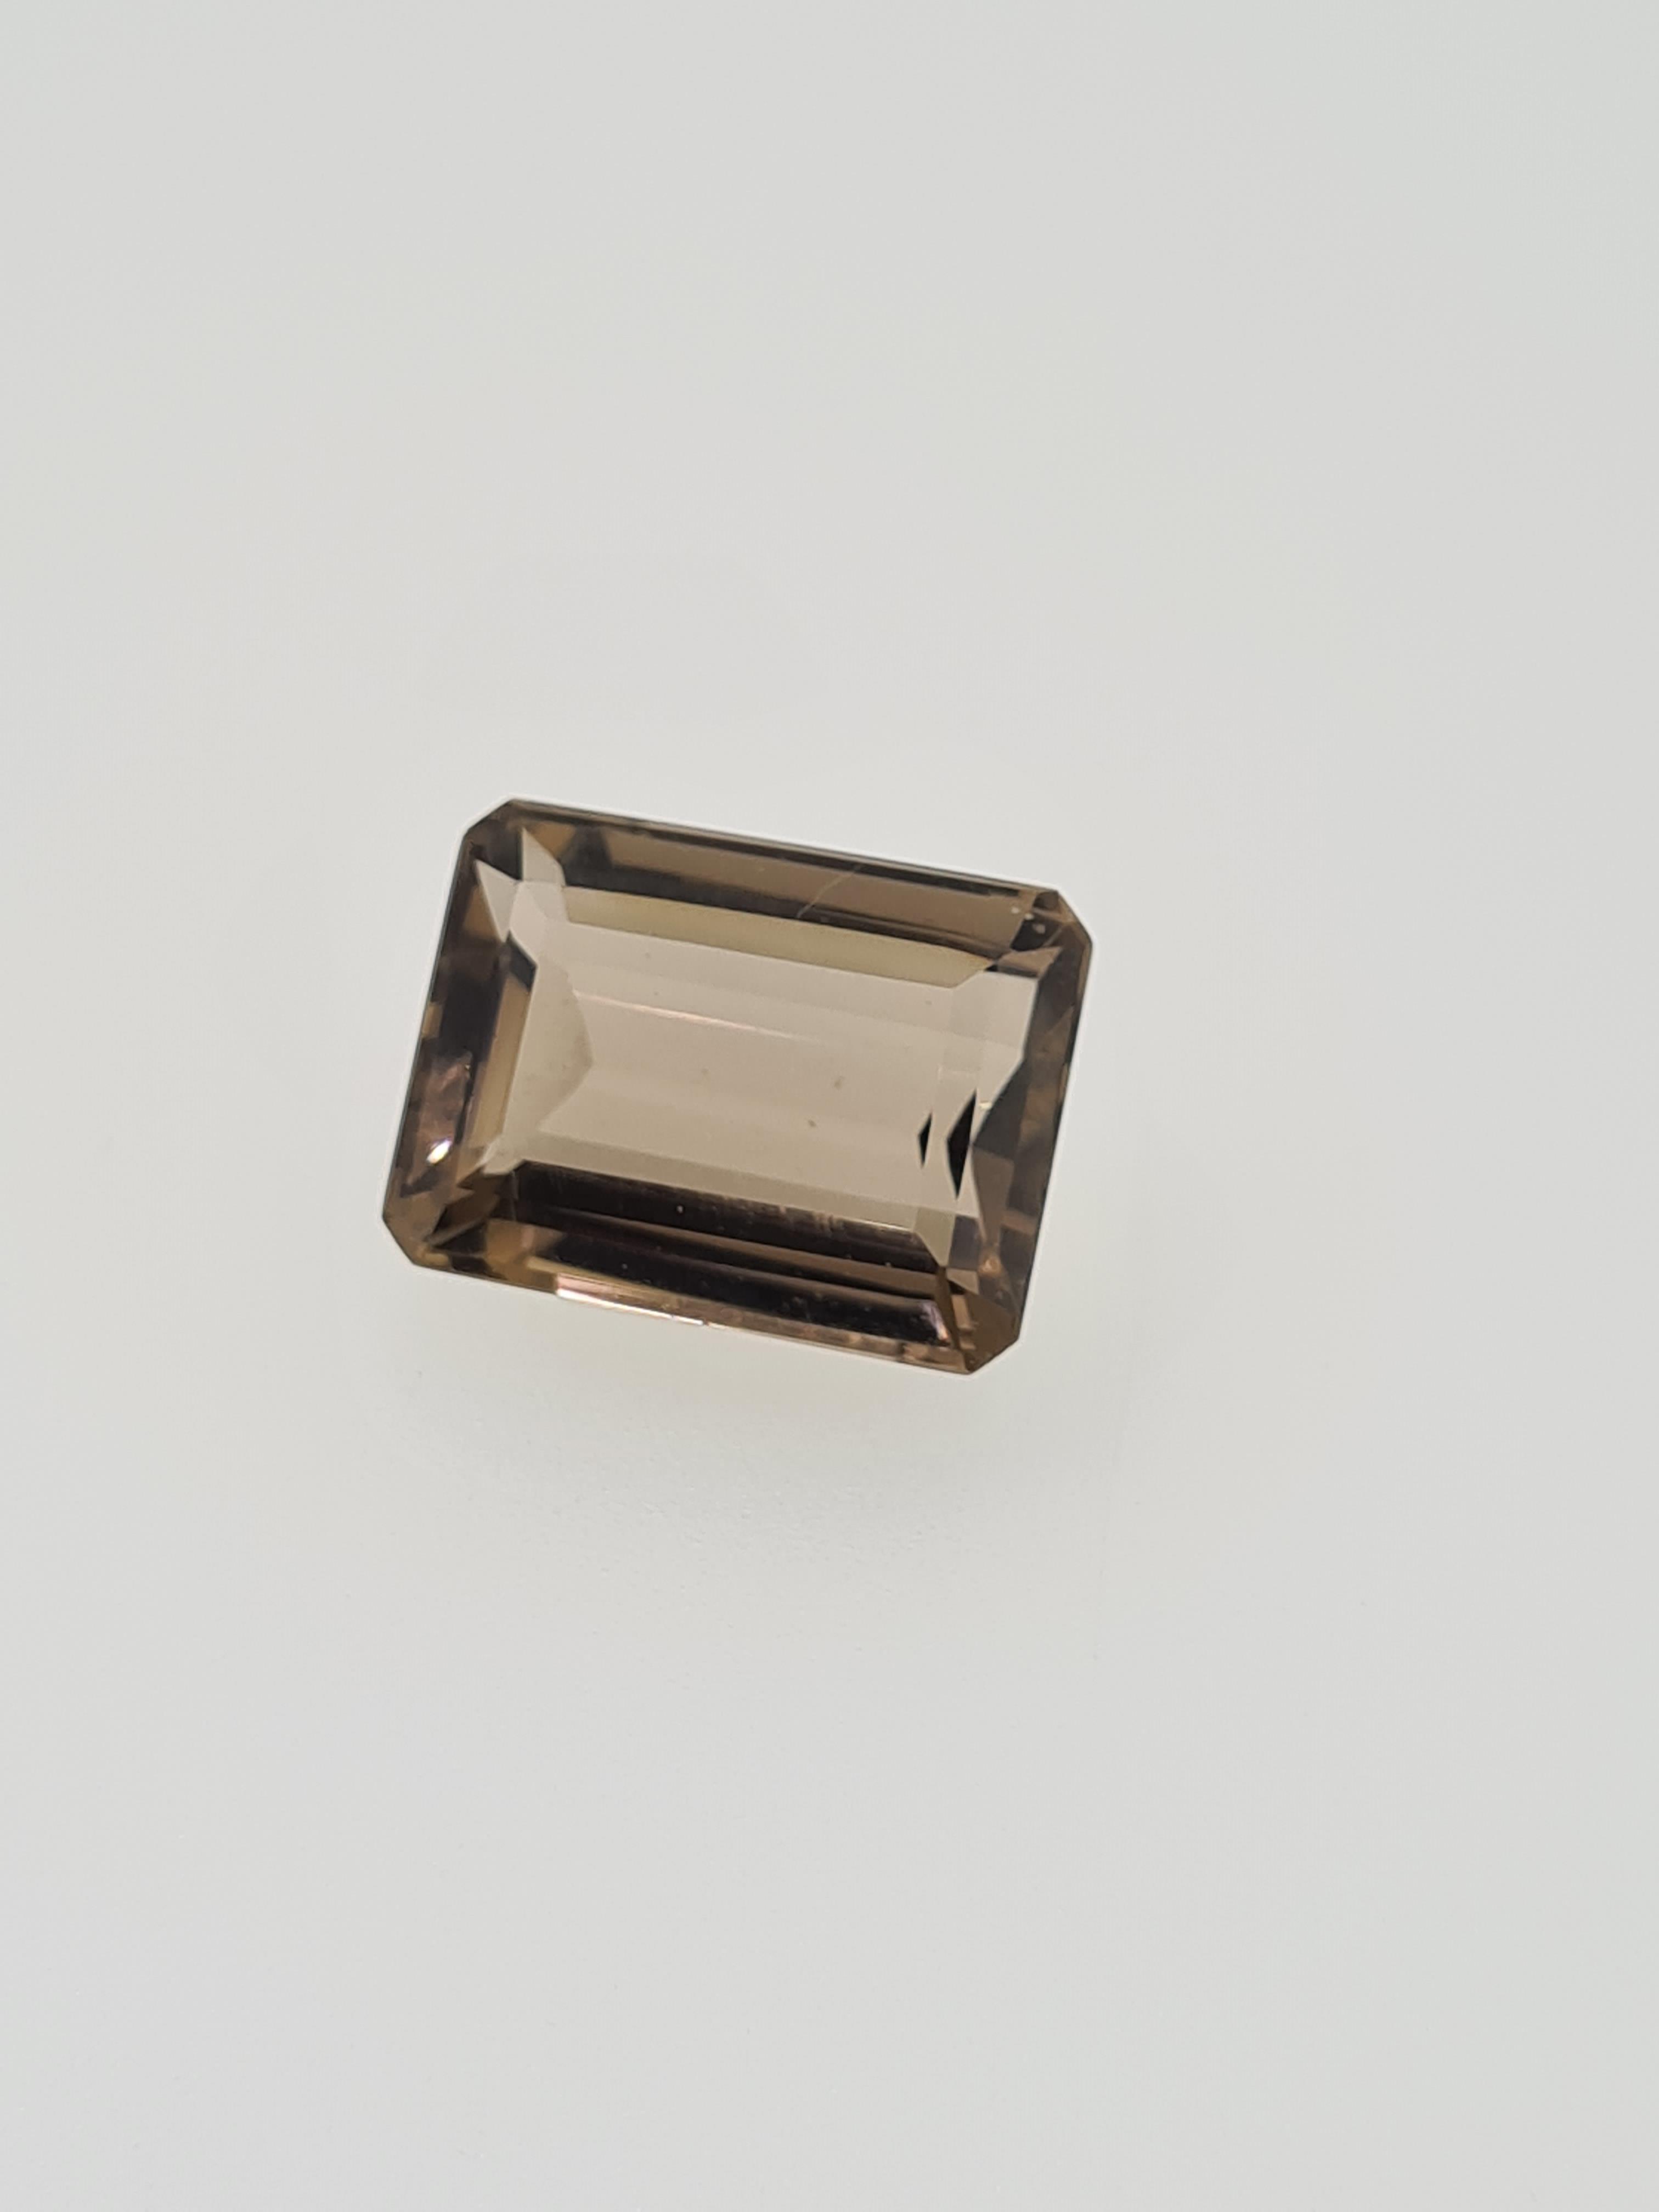 Smokey quartz emeral cut gem stonw - Image 3 of 4